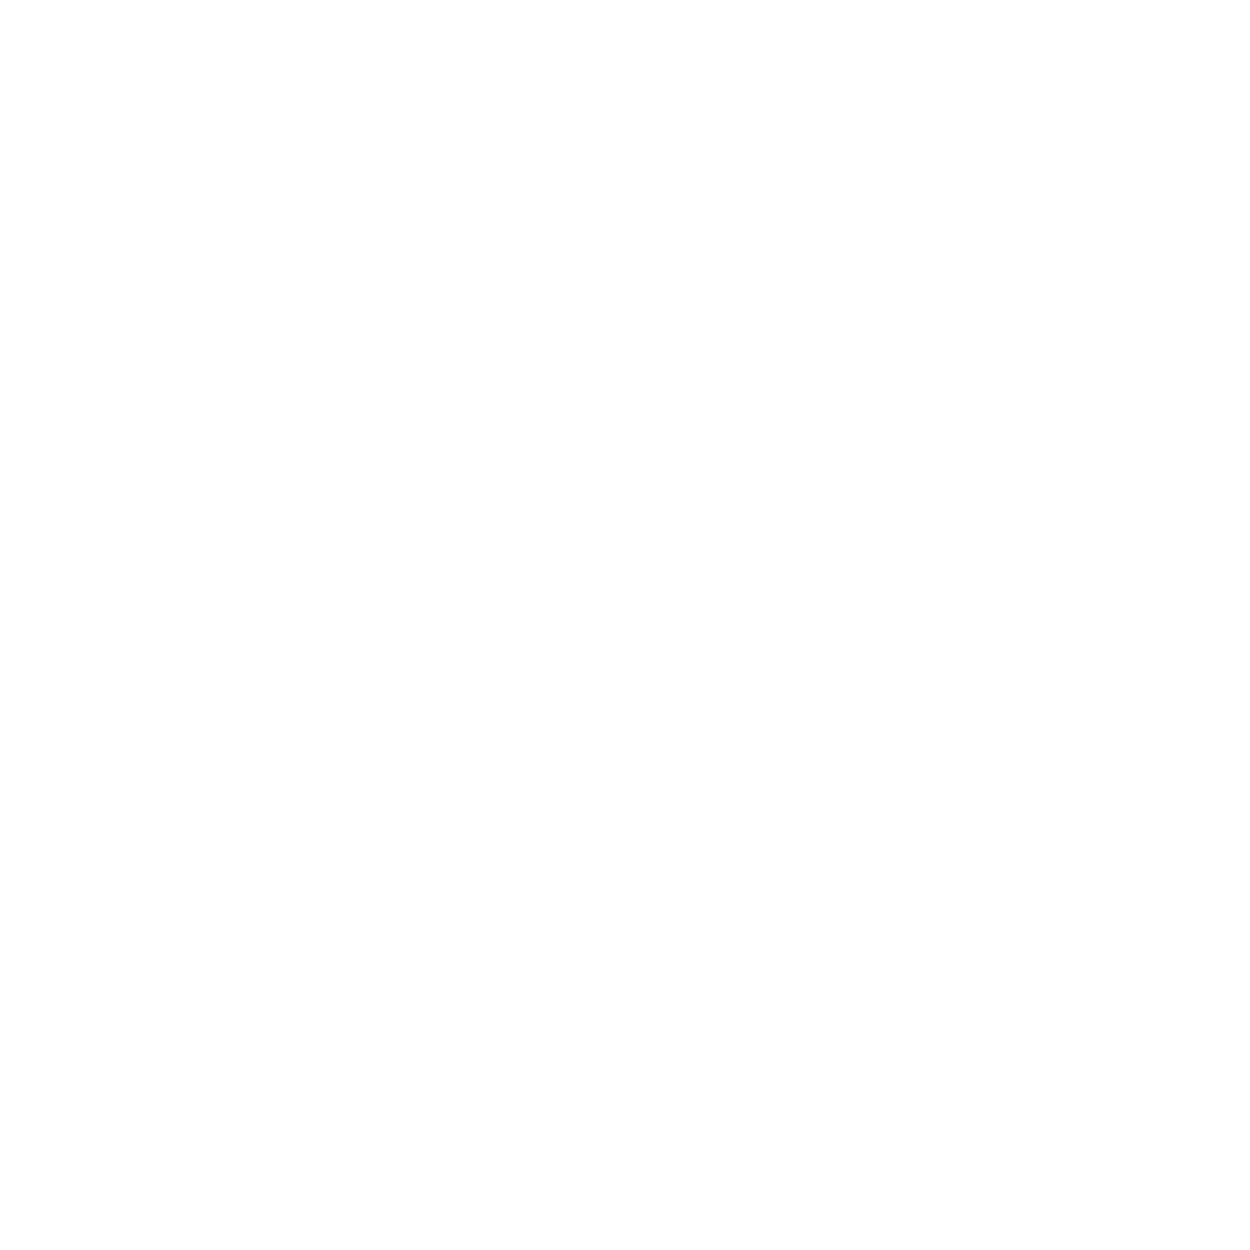 Heidi Mierop's Portfolio Site